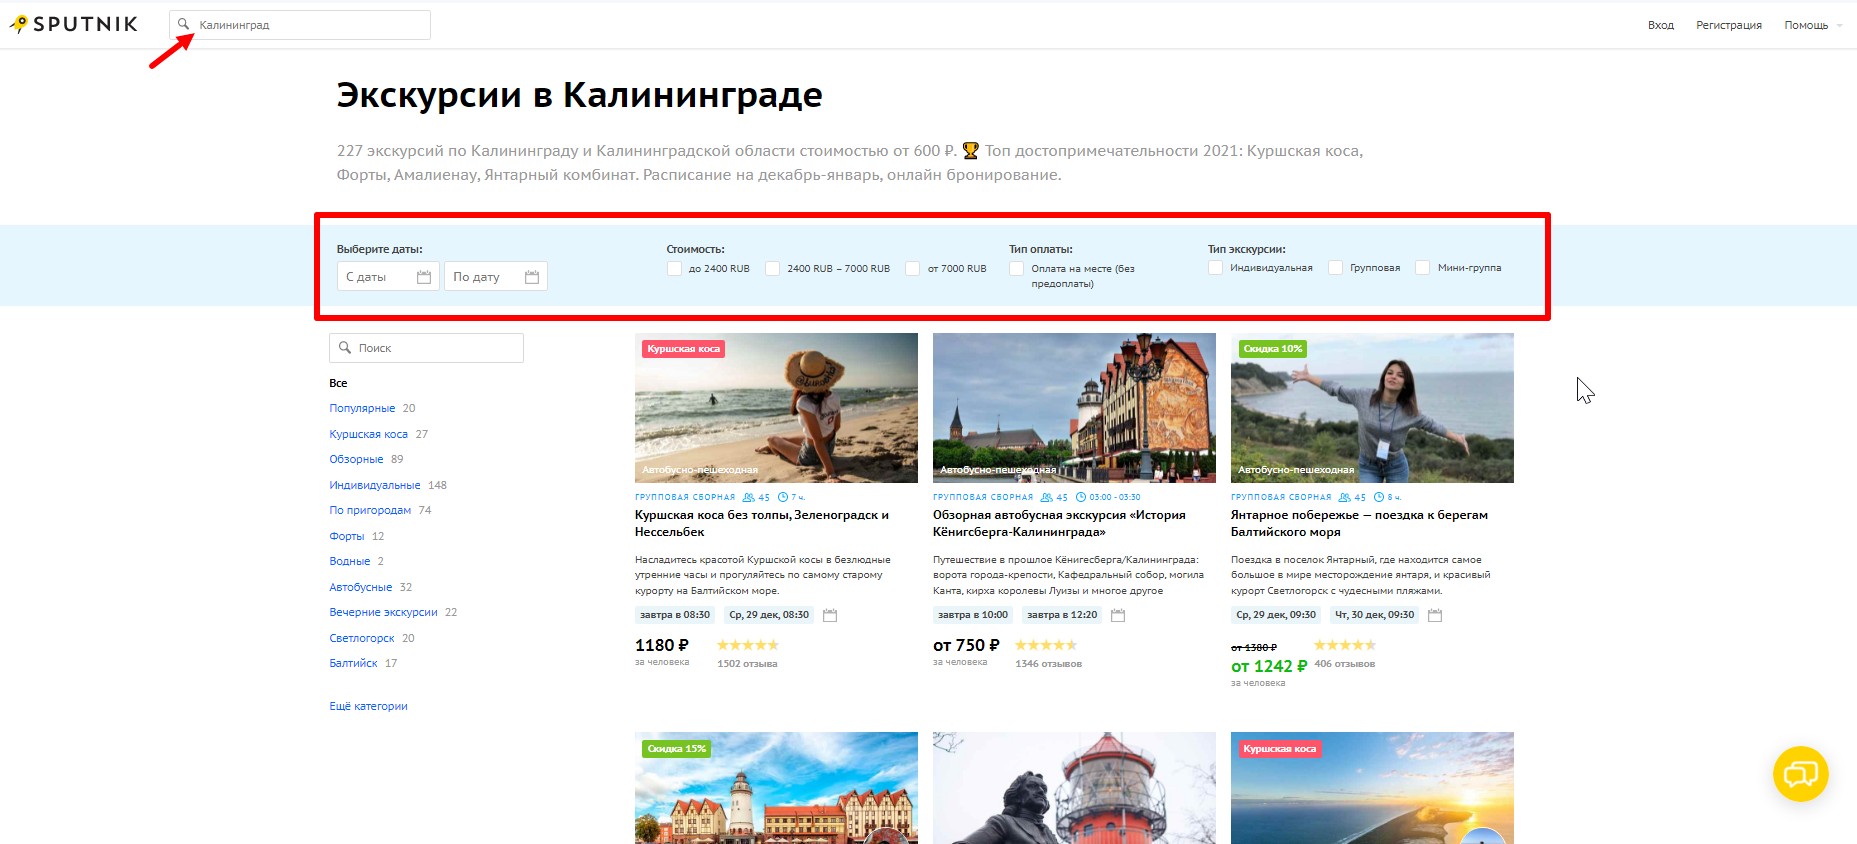 Пример поиска экскурсий в Калининграде на Sputnik8.com